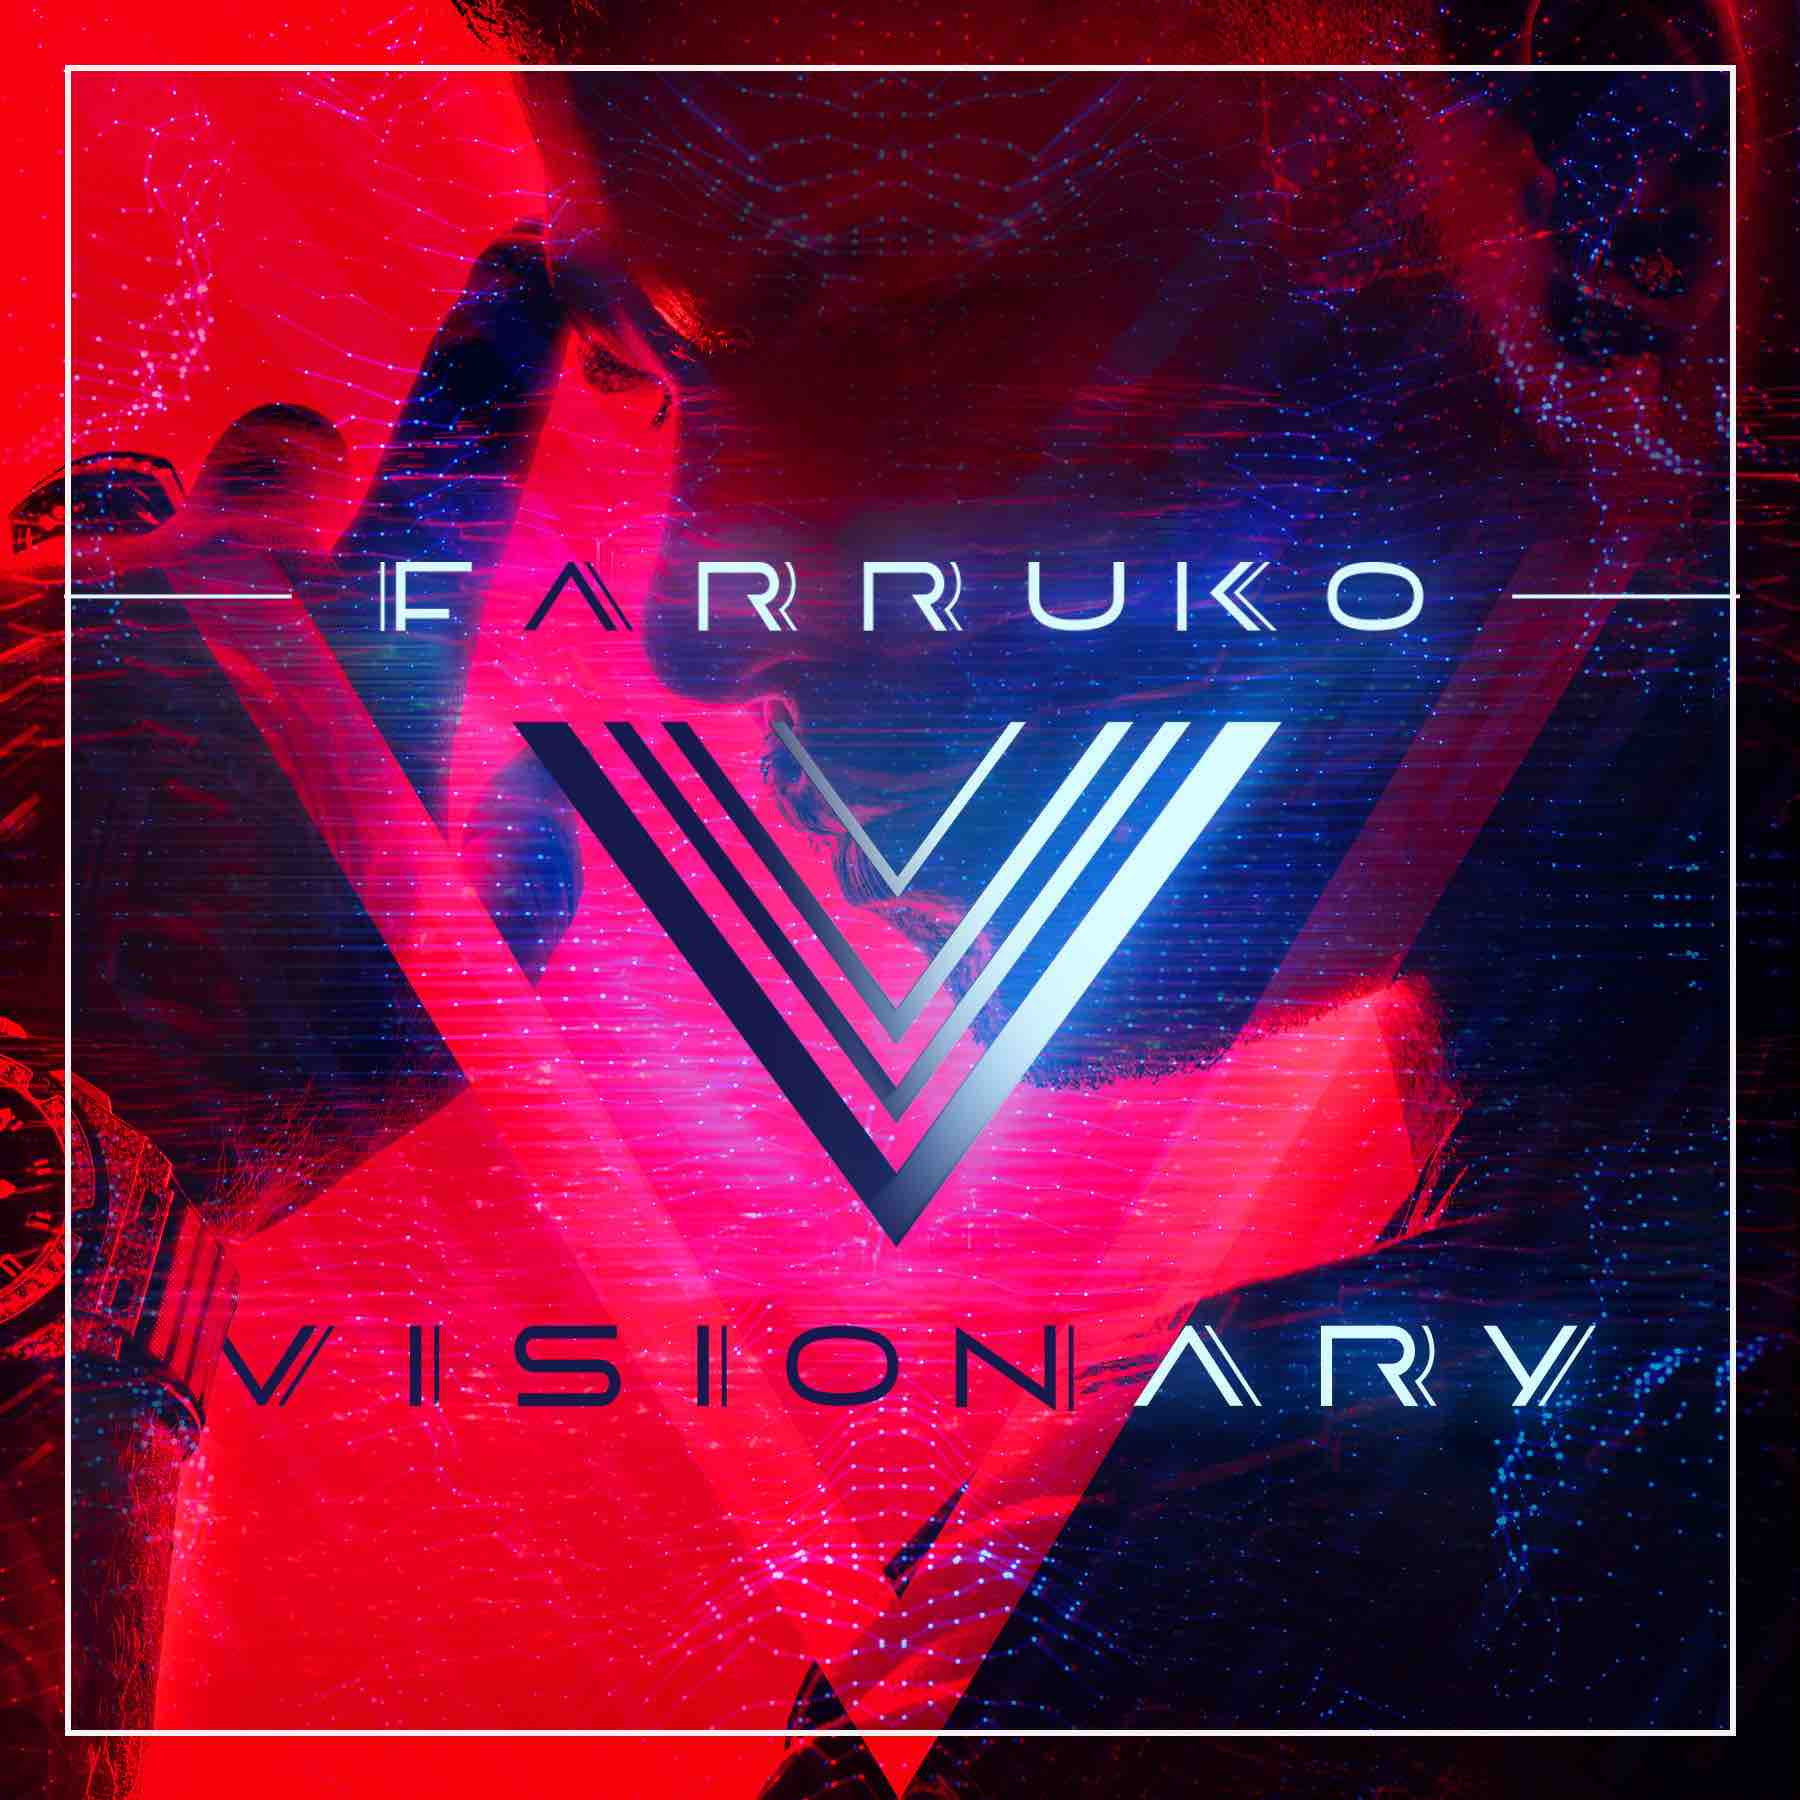 FARRUKO #1 en Billboard con su éxito internacional “Obsesionado”